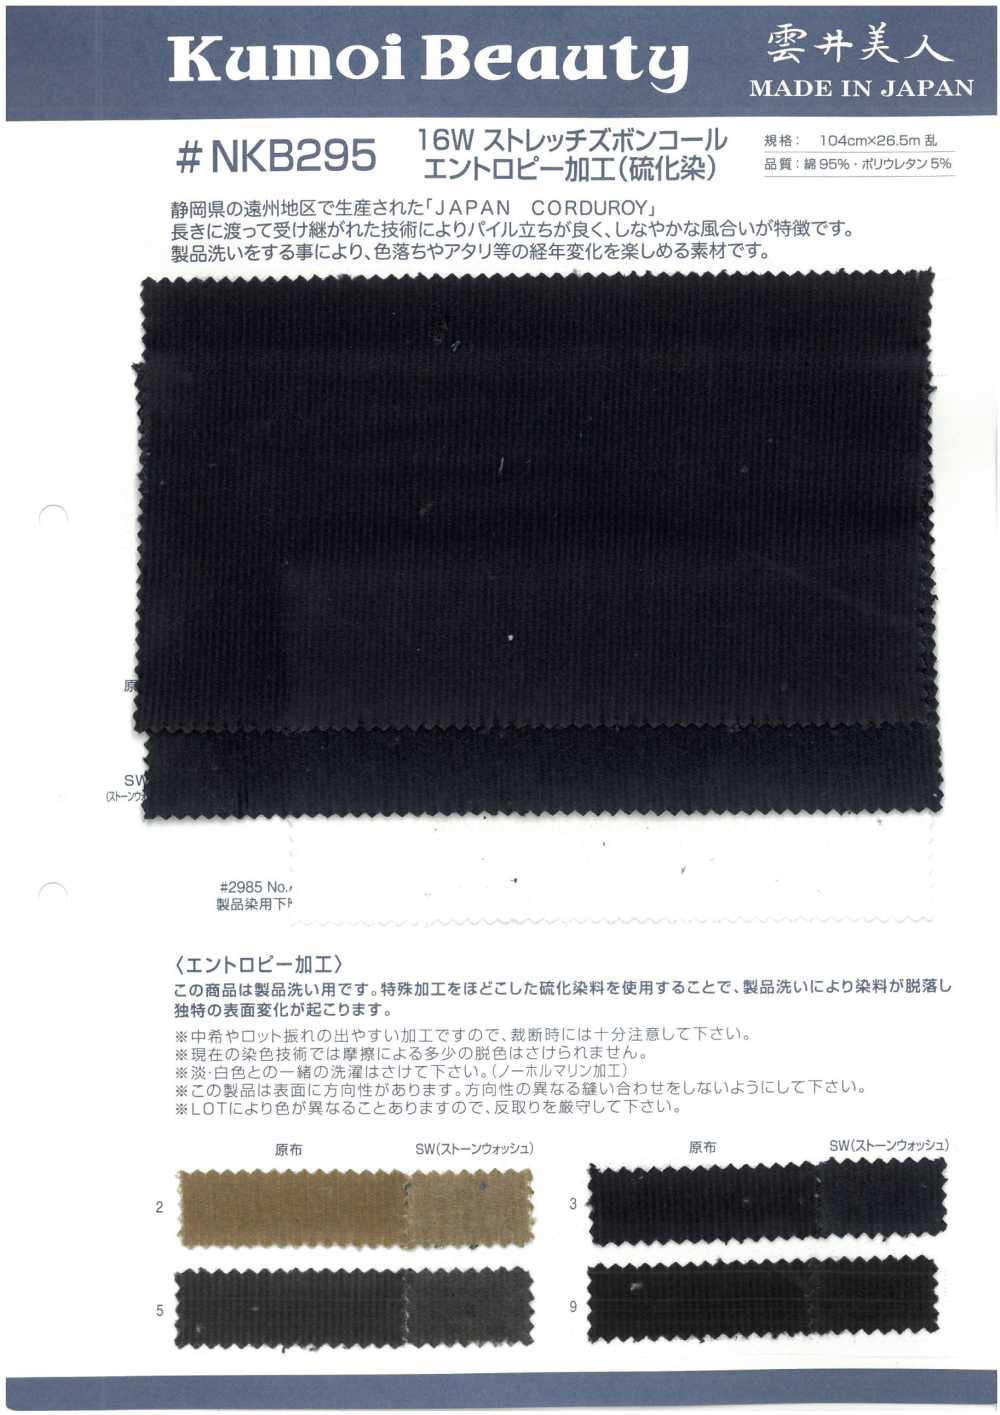 NKB295 Procesamiento De Entropía De Pana De Pantalones Elásticos De 16 W (Teñido De Azufre)[Fabrica Textil] Kumoi Beauty (Pana De Terciopelo Chubu)